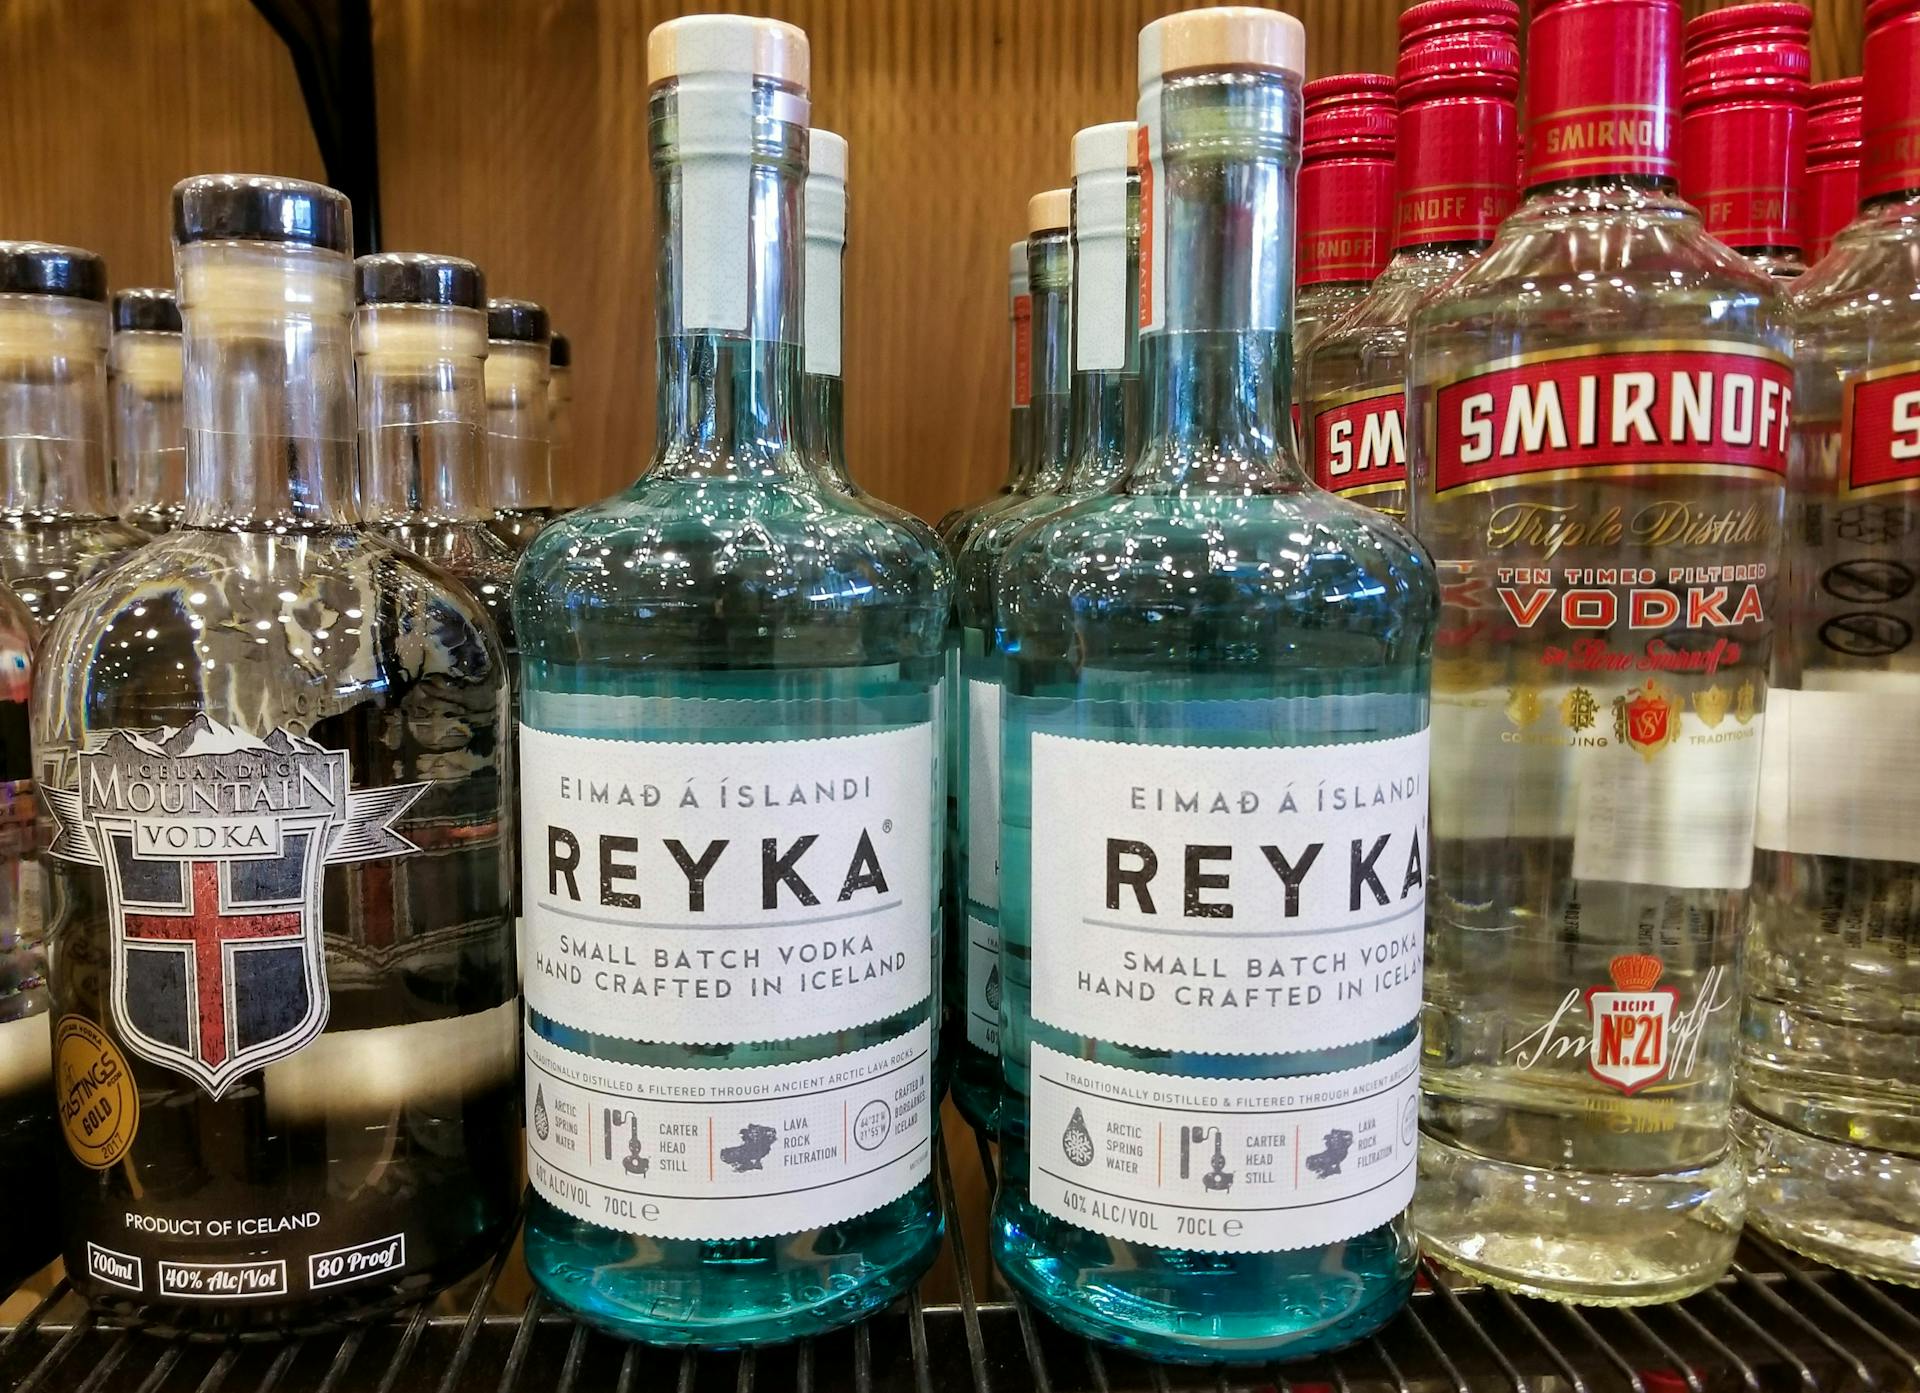 Reykja Vodka bottles